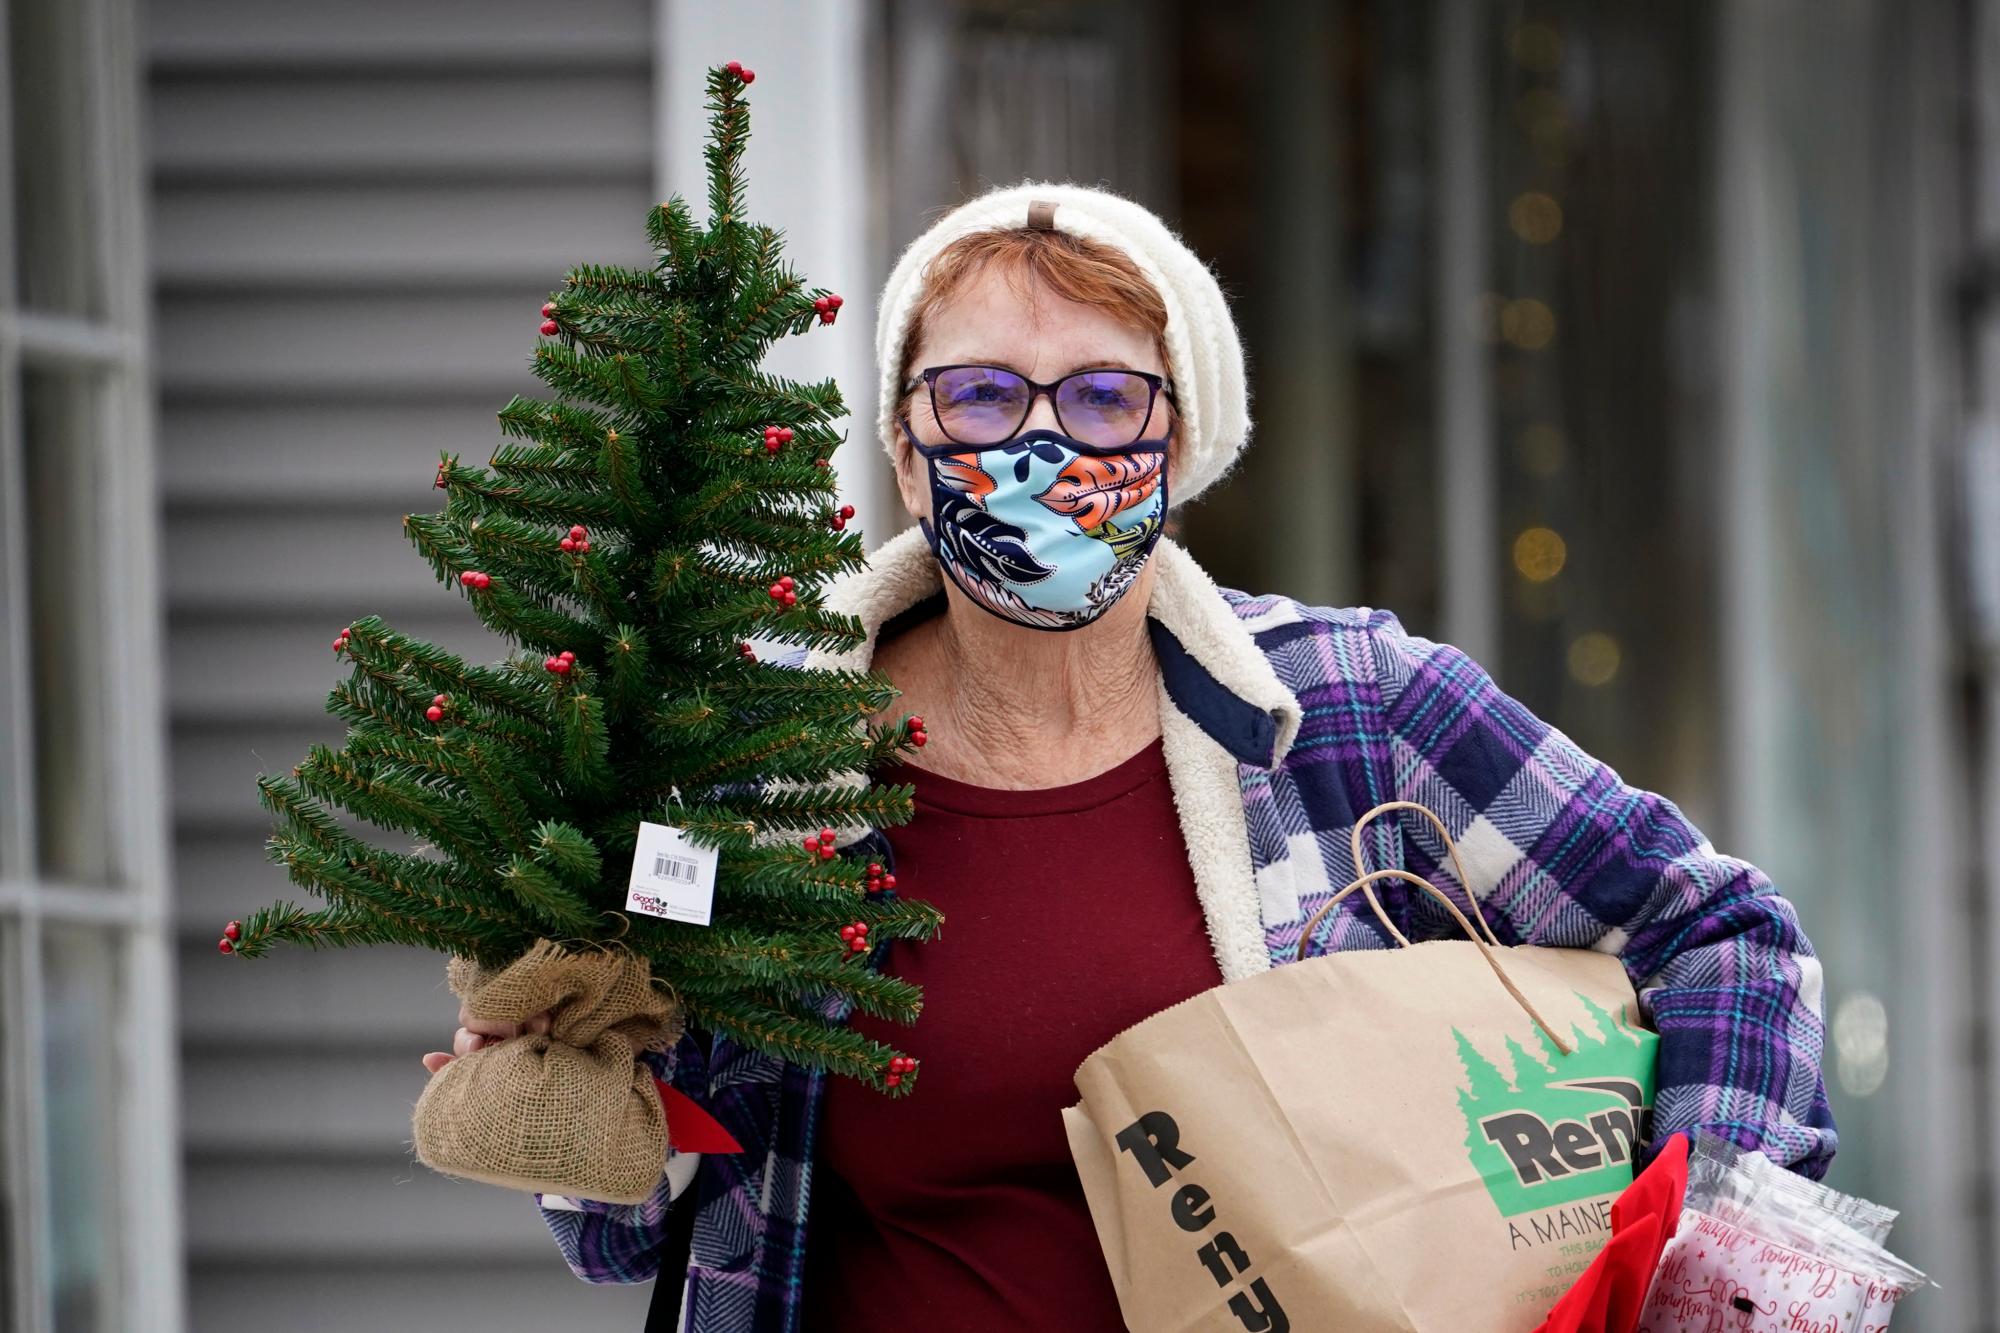 Suzanne West, de Harrison, Maine, usa una cubierta facial para ayudar a prevenir la propagación del coronavirus después de comprar decoraciones navideñas, el viernes 13 de noviembre de 2020 en Bridgton, Maine. El estado informó un nuevo número récord de casos de COVID-19 el viernes. 